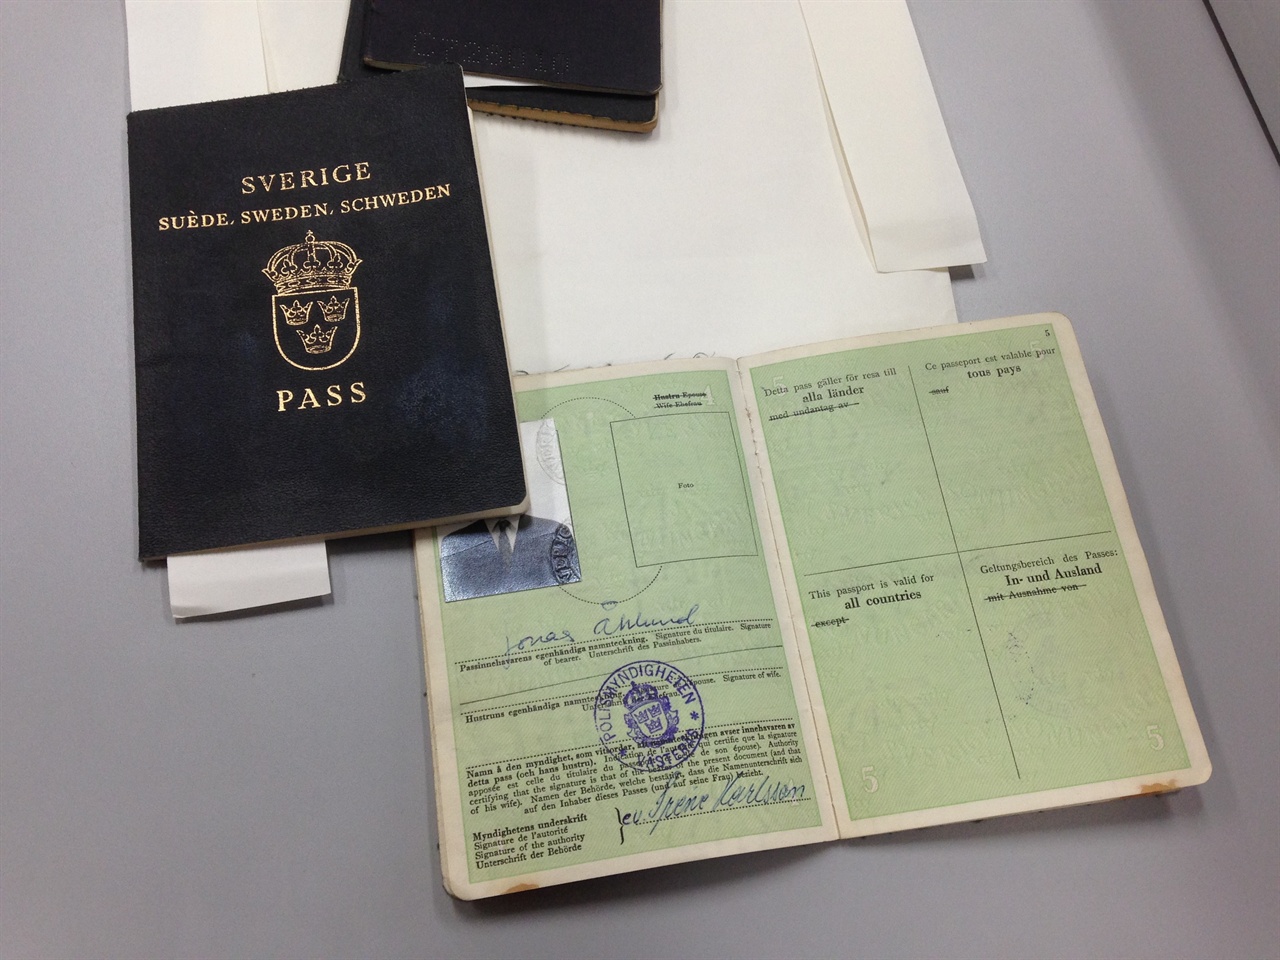 개인 정보 보호를 위해 해당 인물들의 사진은 모두 가렸다. 여권들 중에는 연습을 위해 여러개의 스탬프를 찍은 것들과 입국에 성공한 완성품이 섞여있었다.